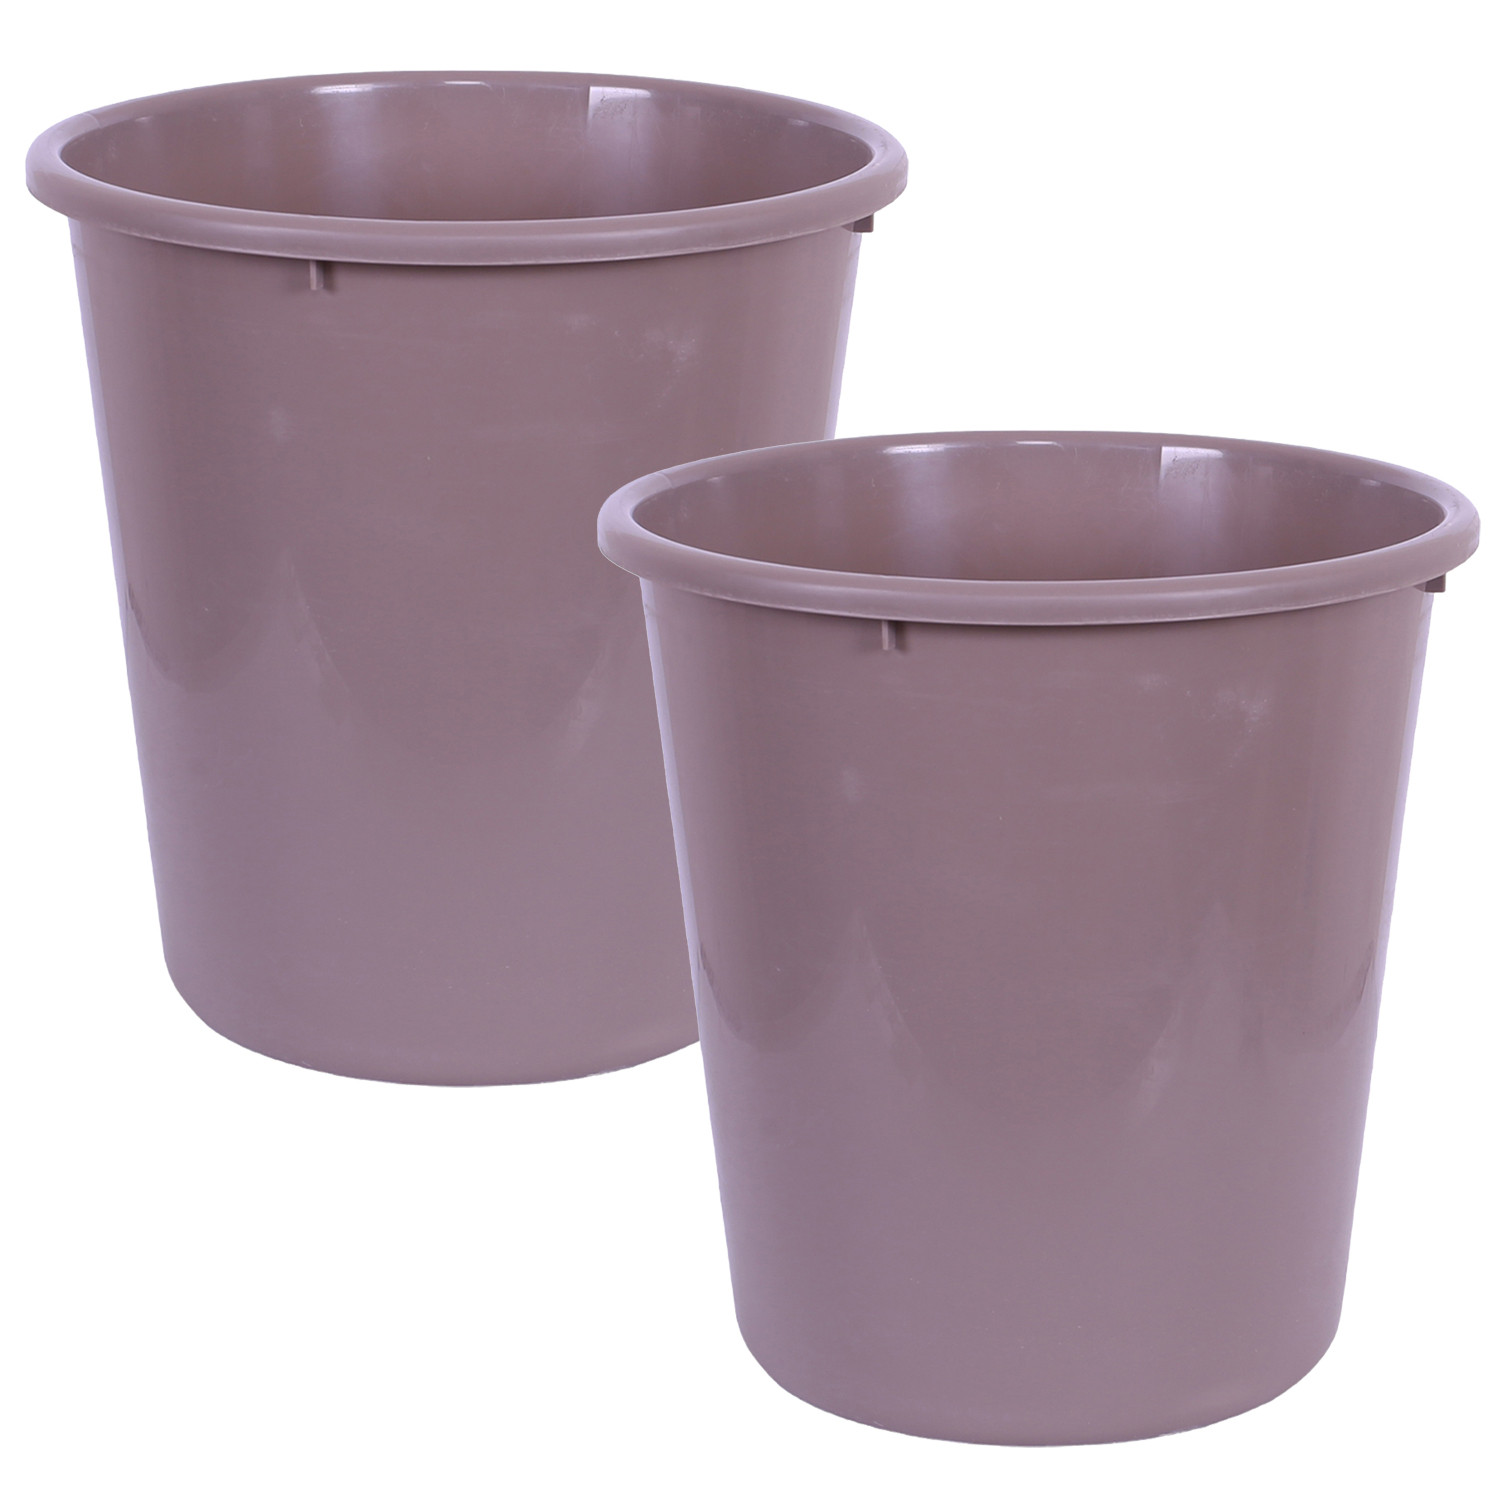 Kuber Industries Dustbin | Open Dustbin | Plastic Garbage Dustbin | Dustbin For Kitchen | Dustbin For Bathroom | Office Dustbin | Plain Sada Dustbin | 10 LTR | Brown